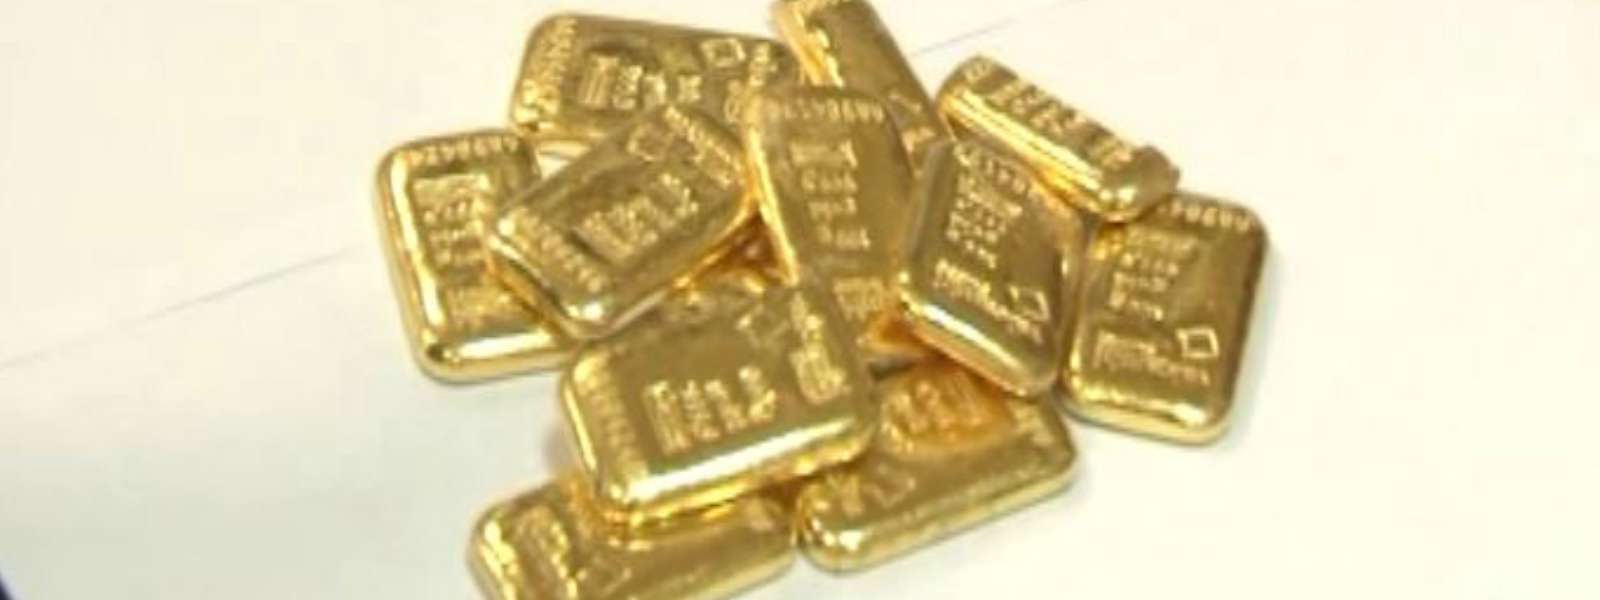 Gold Smuggler apprehended at BIA